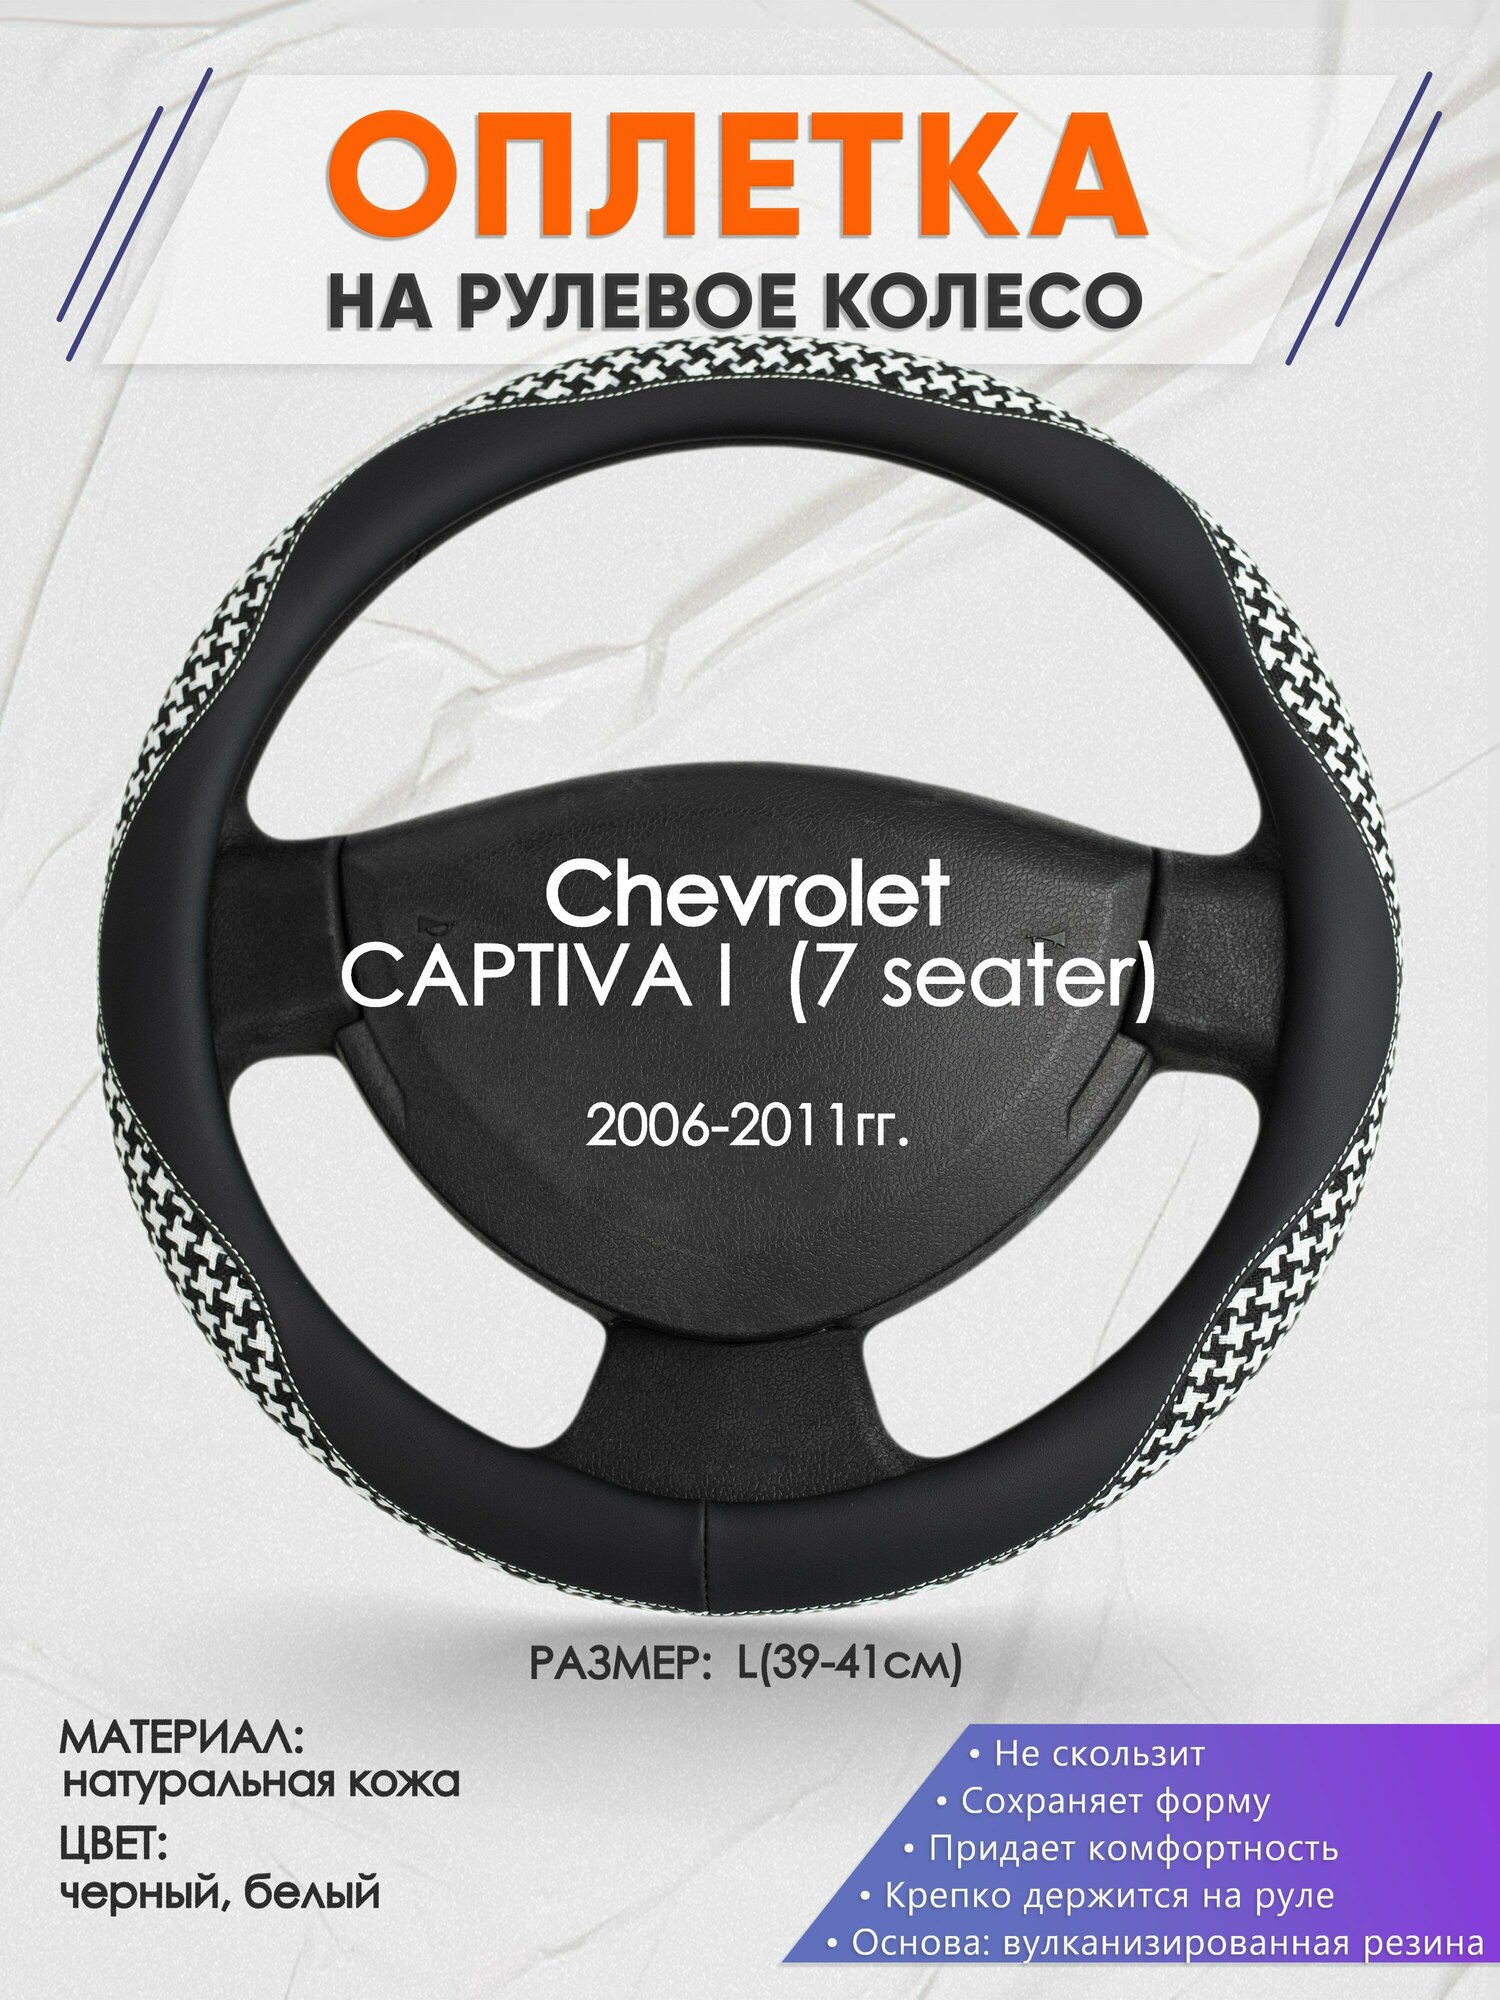 Оплетка на руль для Chevrolet CAPTIVA 1 (7 seater)(Шевроле Каптива) 2006-2011, L(39-41см), Натуральная кожа 21